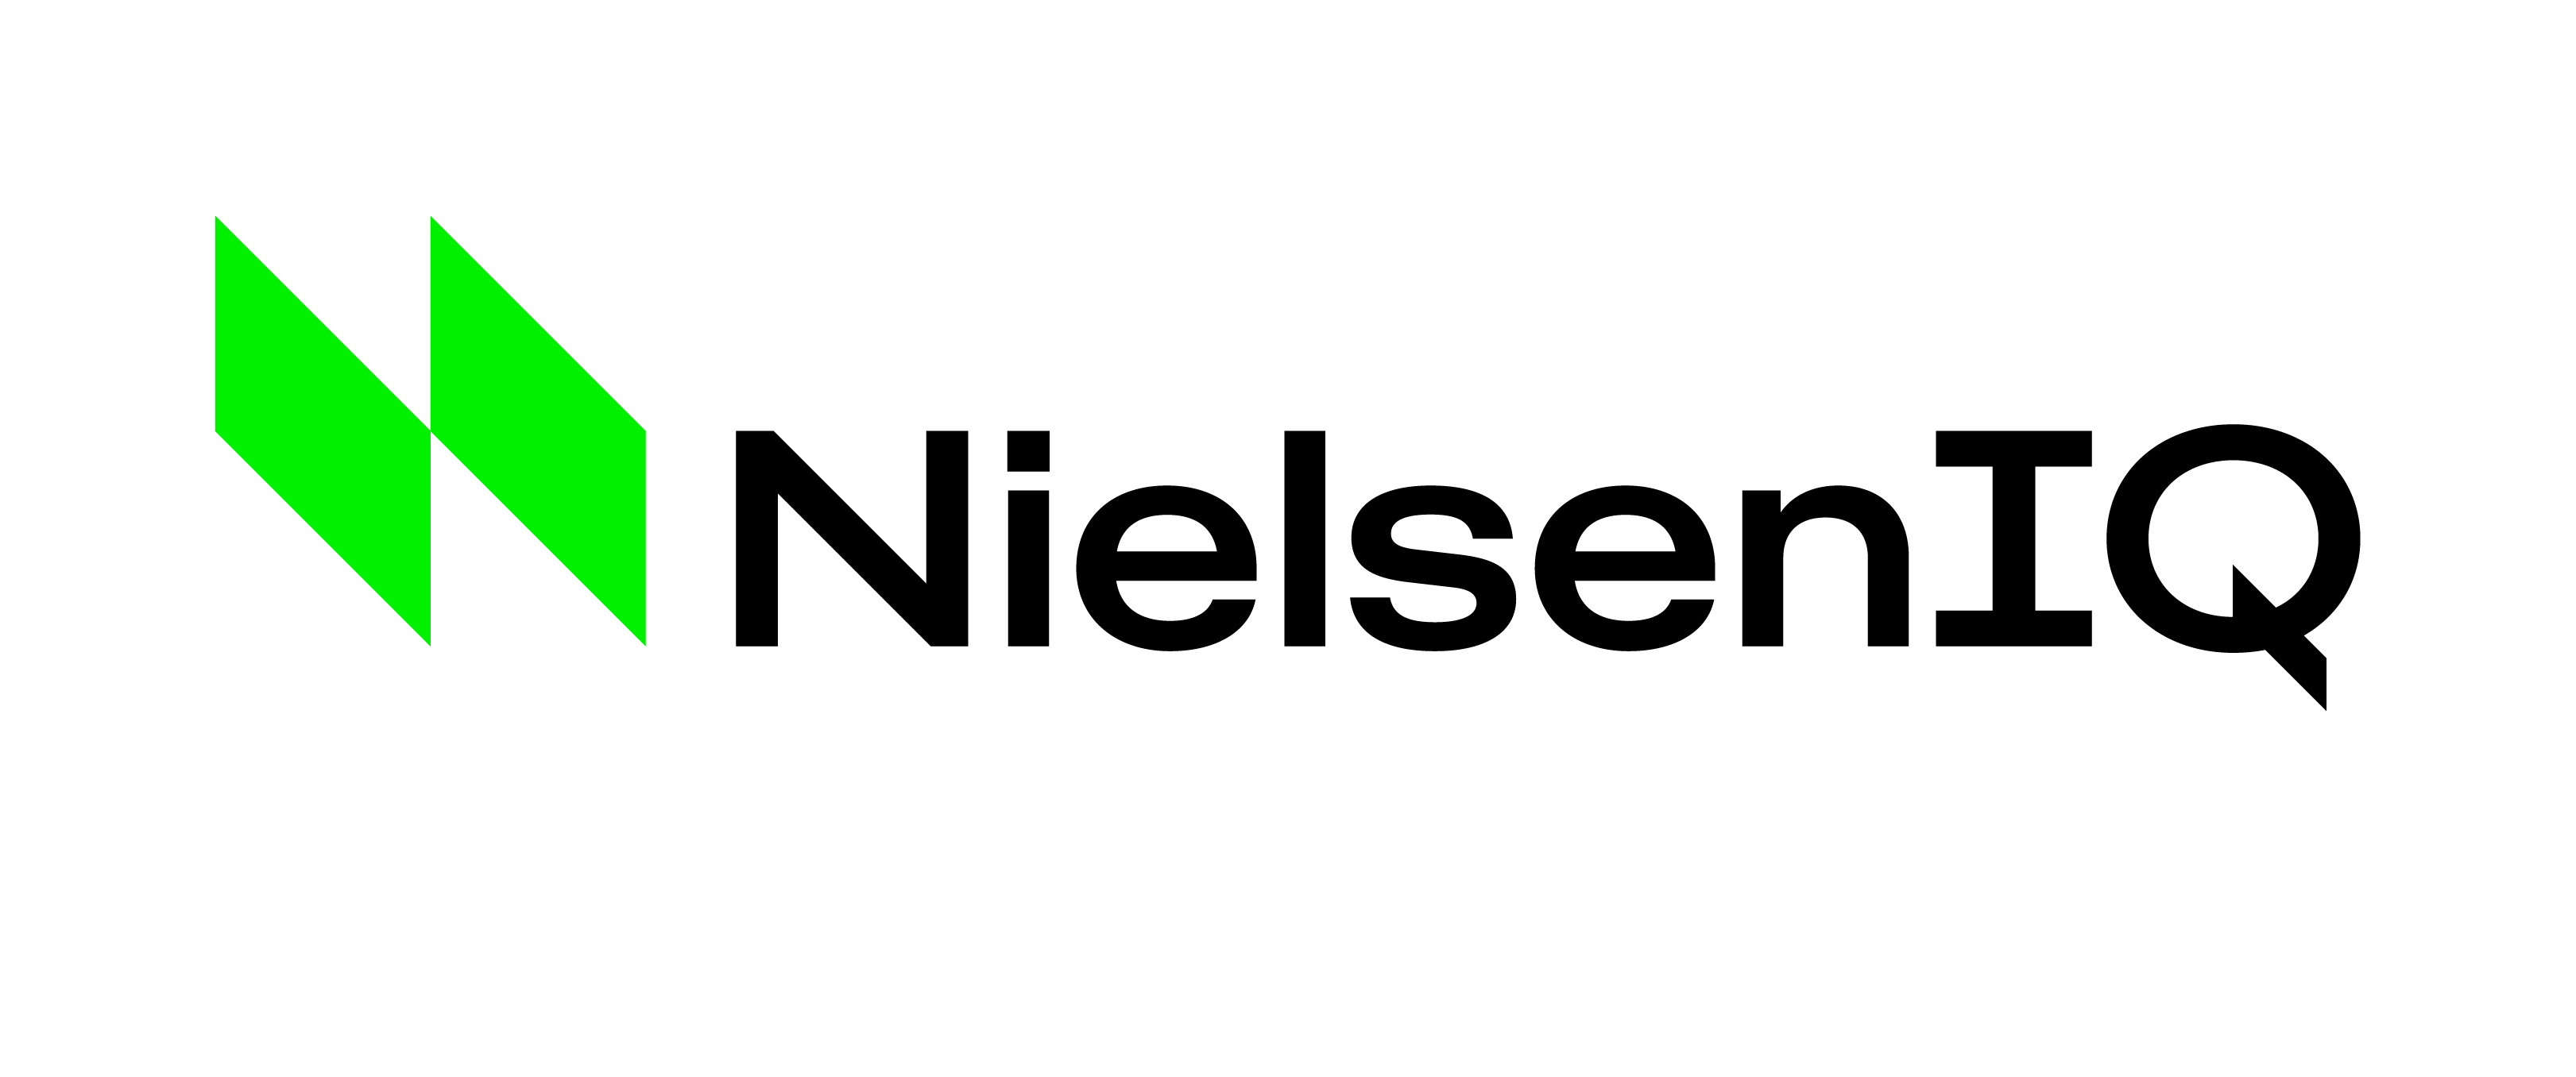 닐슨컴퍼니코리아의 로고 이미지